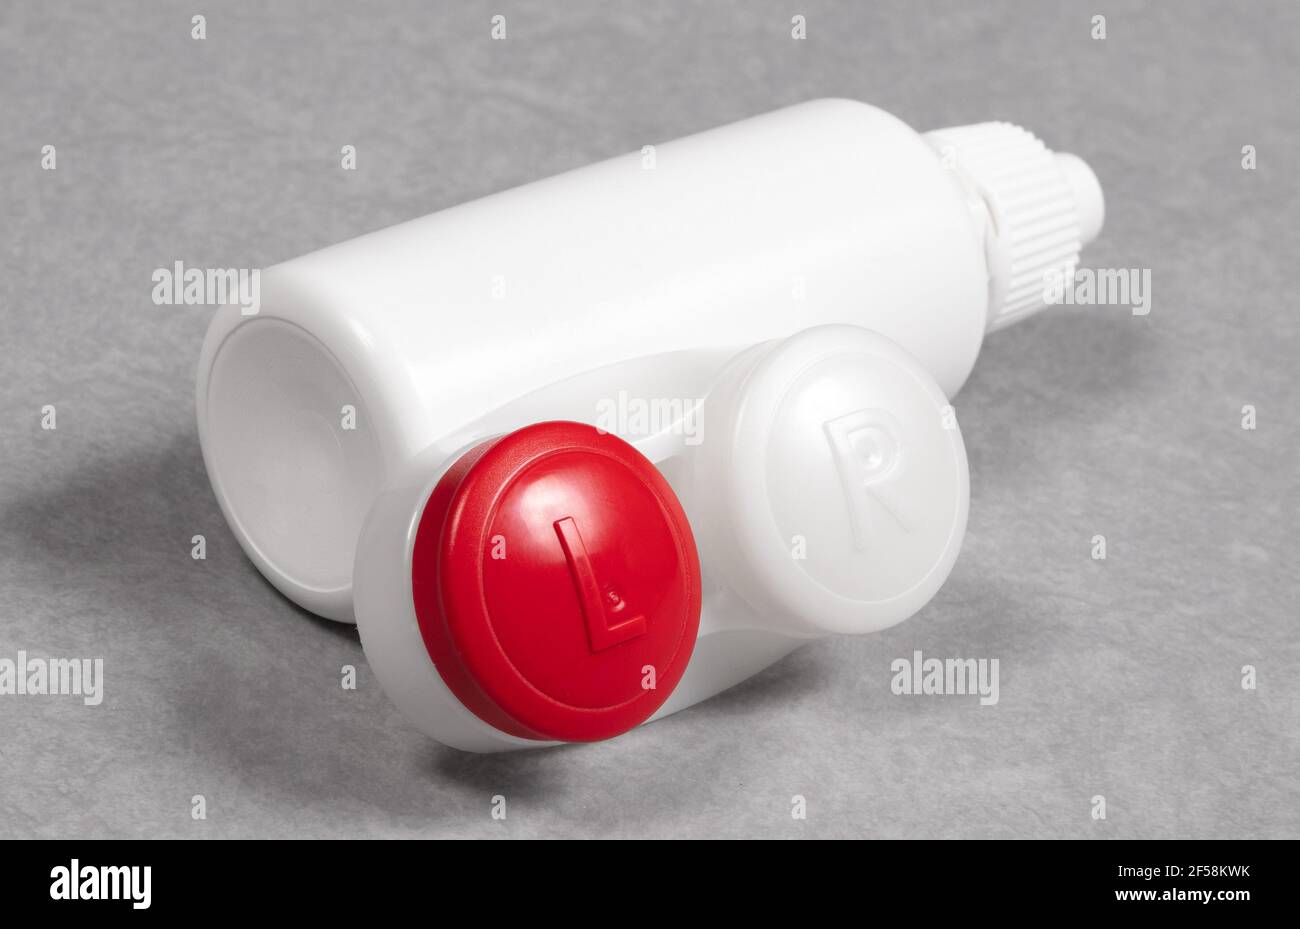 Rotes Kontaktlinsengehäuse und Flasche mit Lösung, isoliert auf grauem Hintergrund Stockfoto